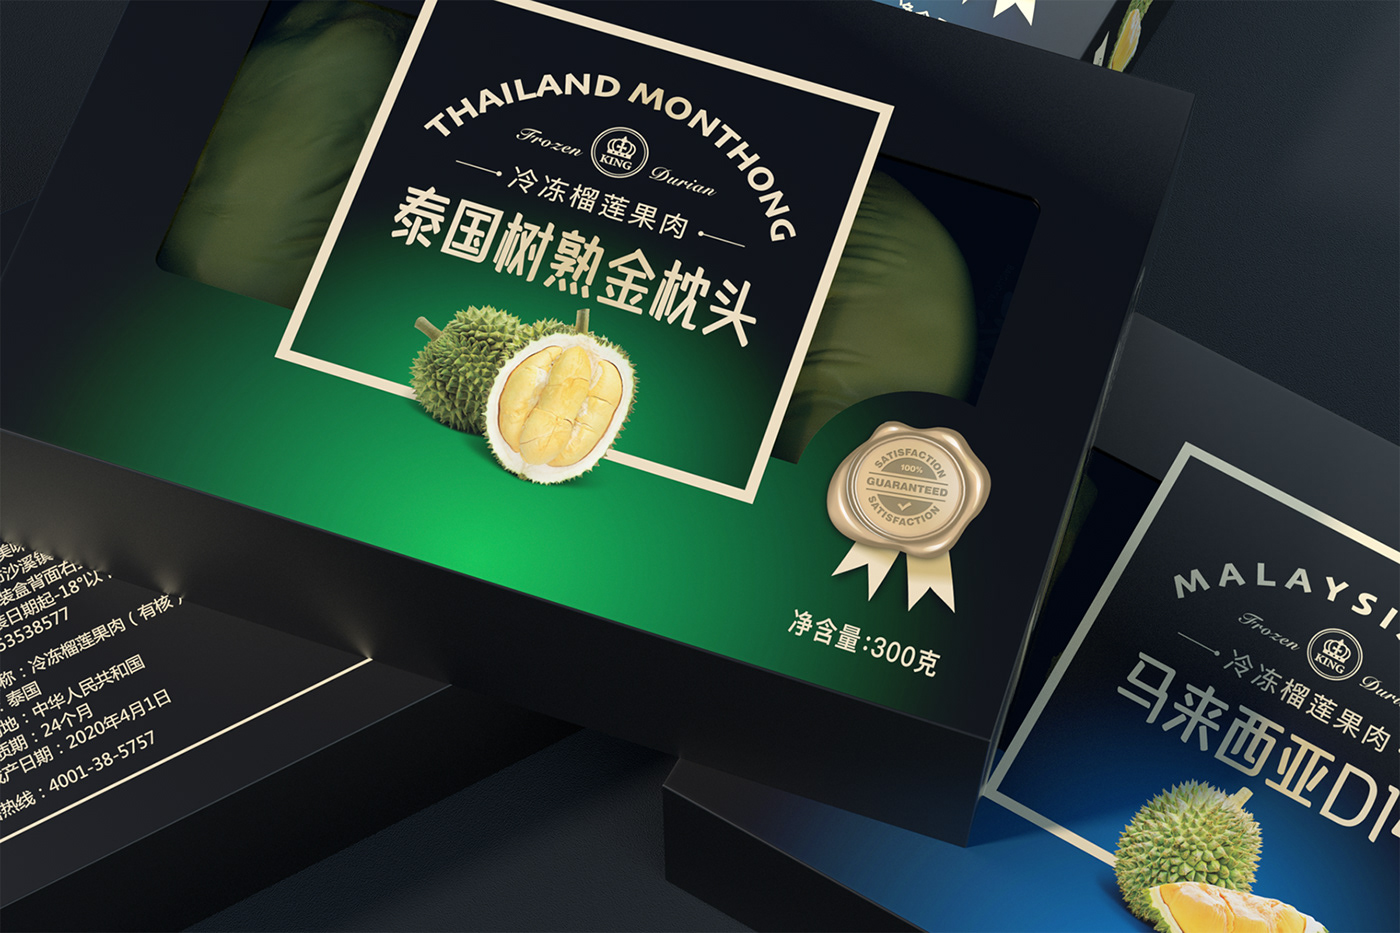 Durian Durian packaging FMCG Food Packaging 包装设计 榴莲 榴莲包装 礼盒设计 食品包装 黑色